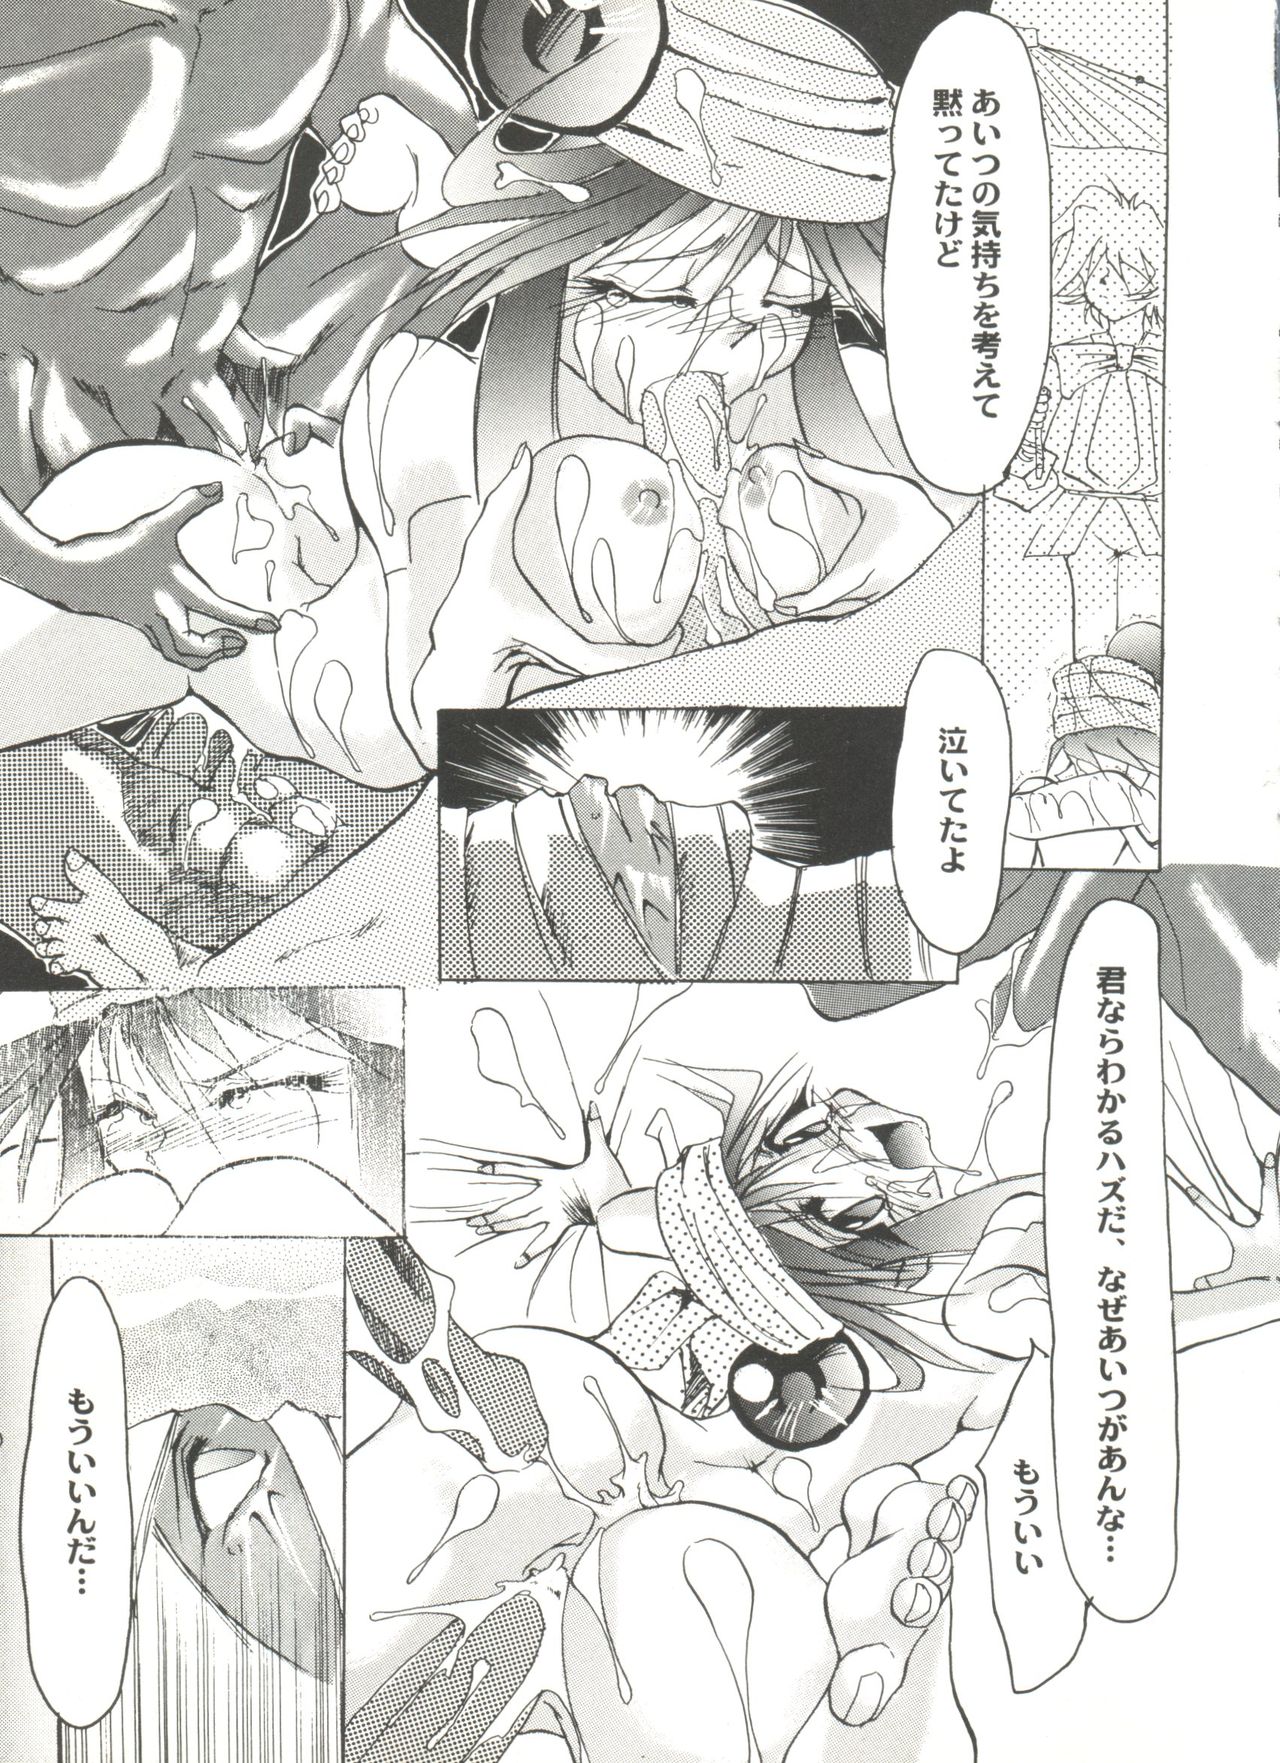 [Anthology] Aniparo Miki 9 (Various) page 25 full